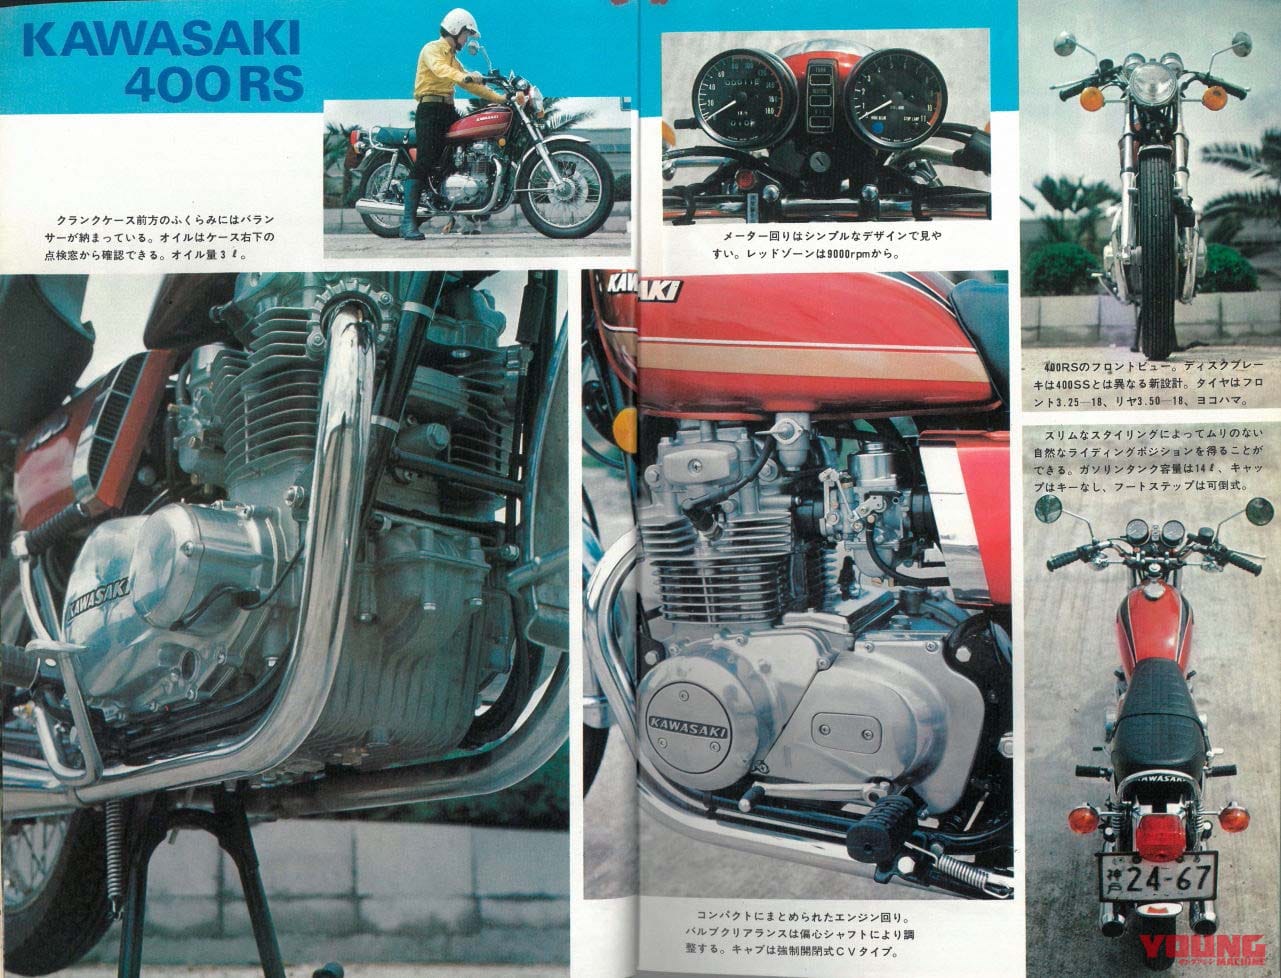 カワサキの400cc新型4気筒「Z400RS」登場確実!? はじまりの「400RS」は ...